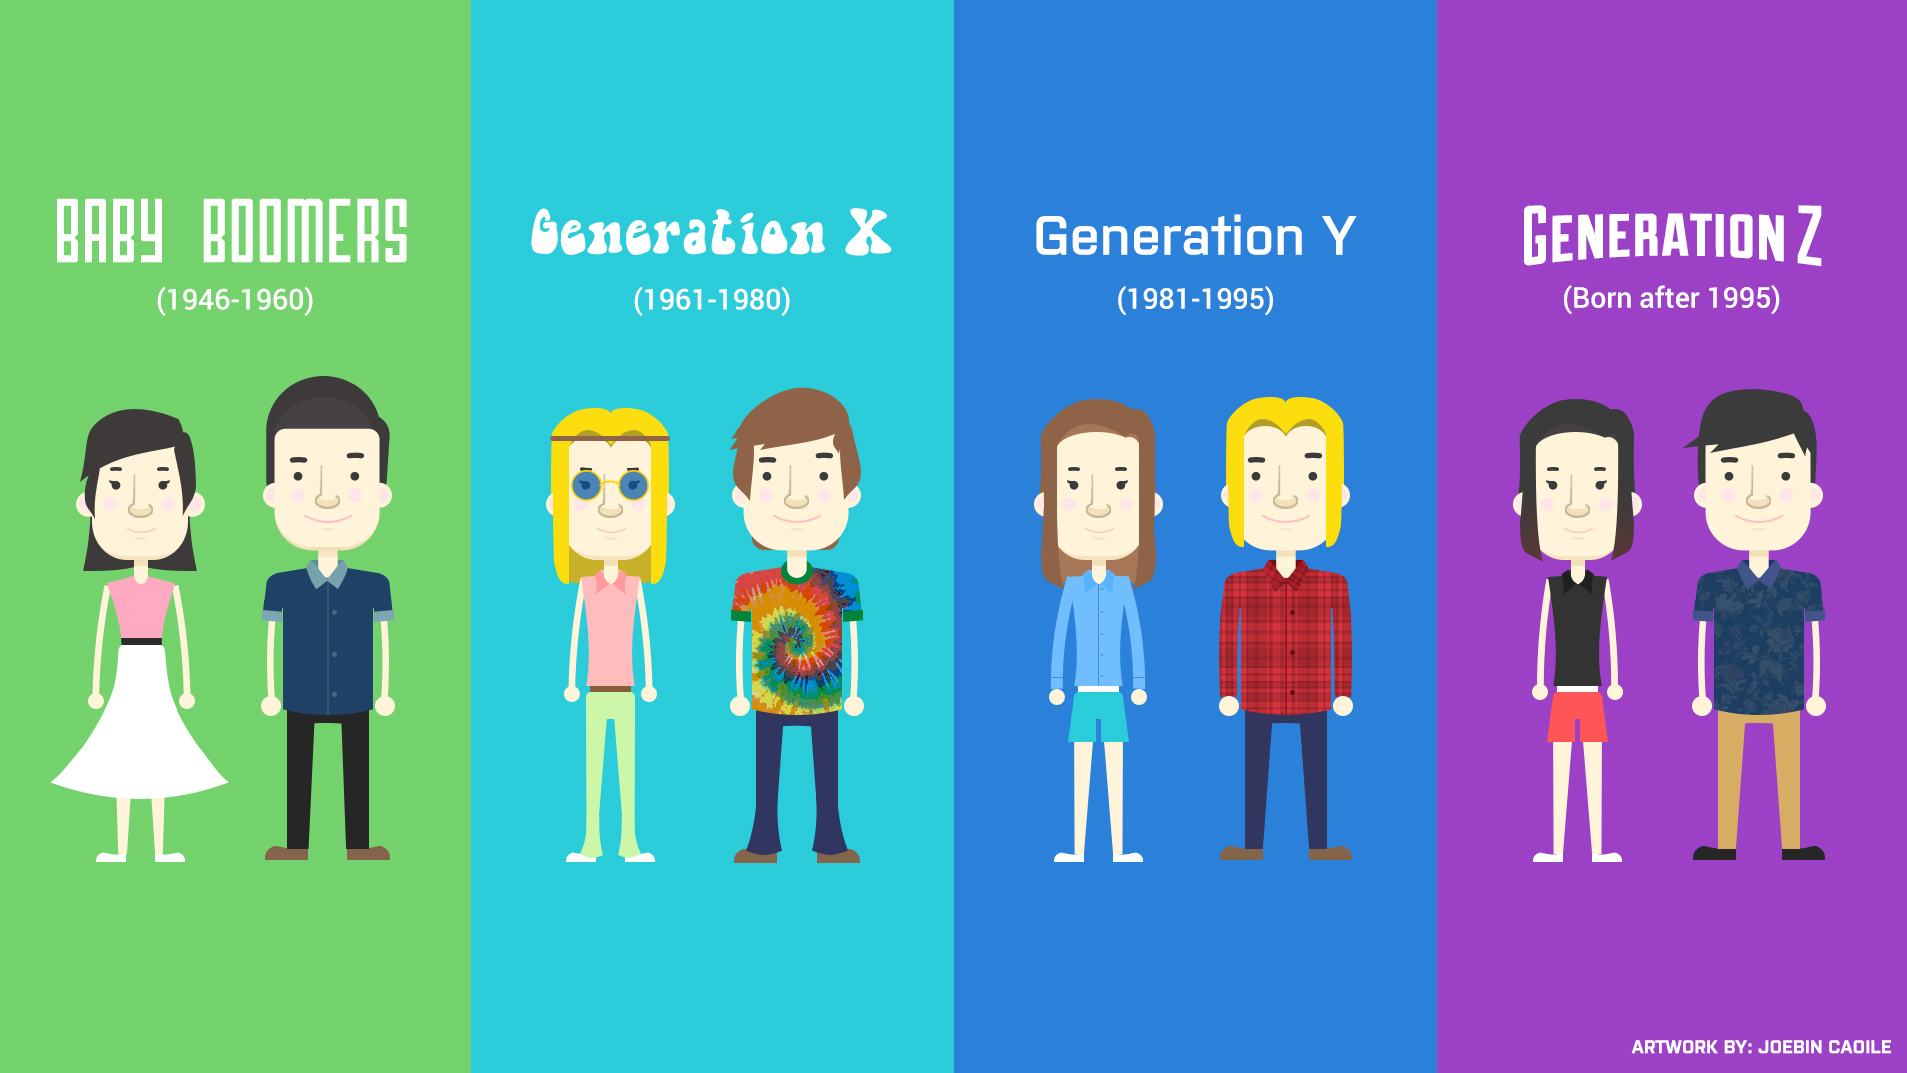 Sự khác biệt lớn nhất giữa 2 thế hệ X và Y trong môi trường làm việc là gì?